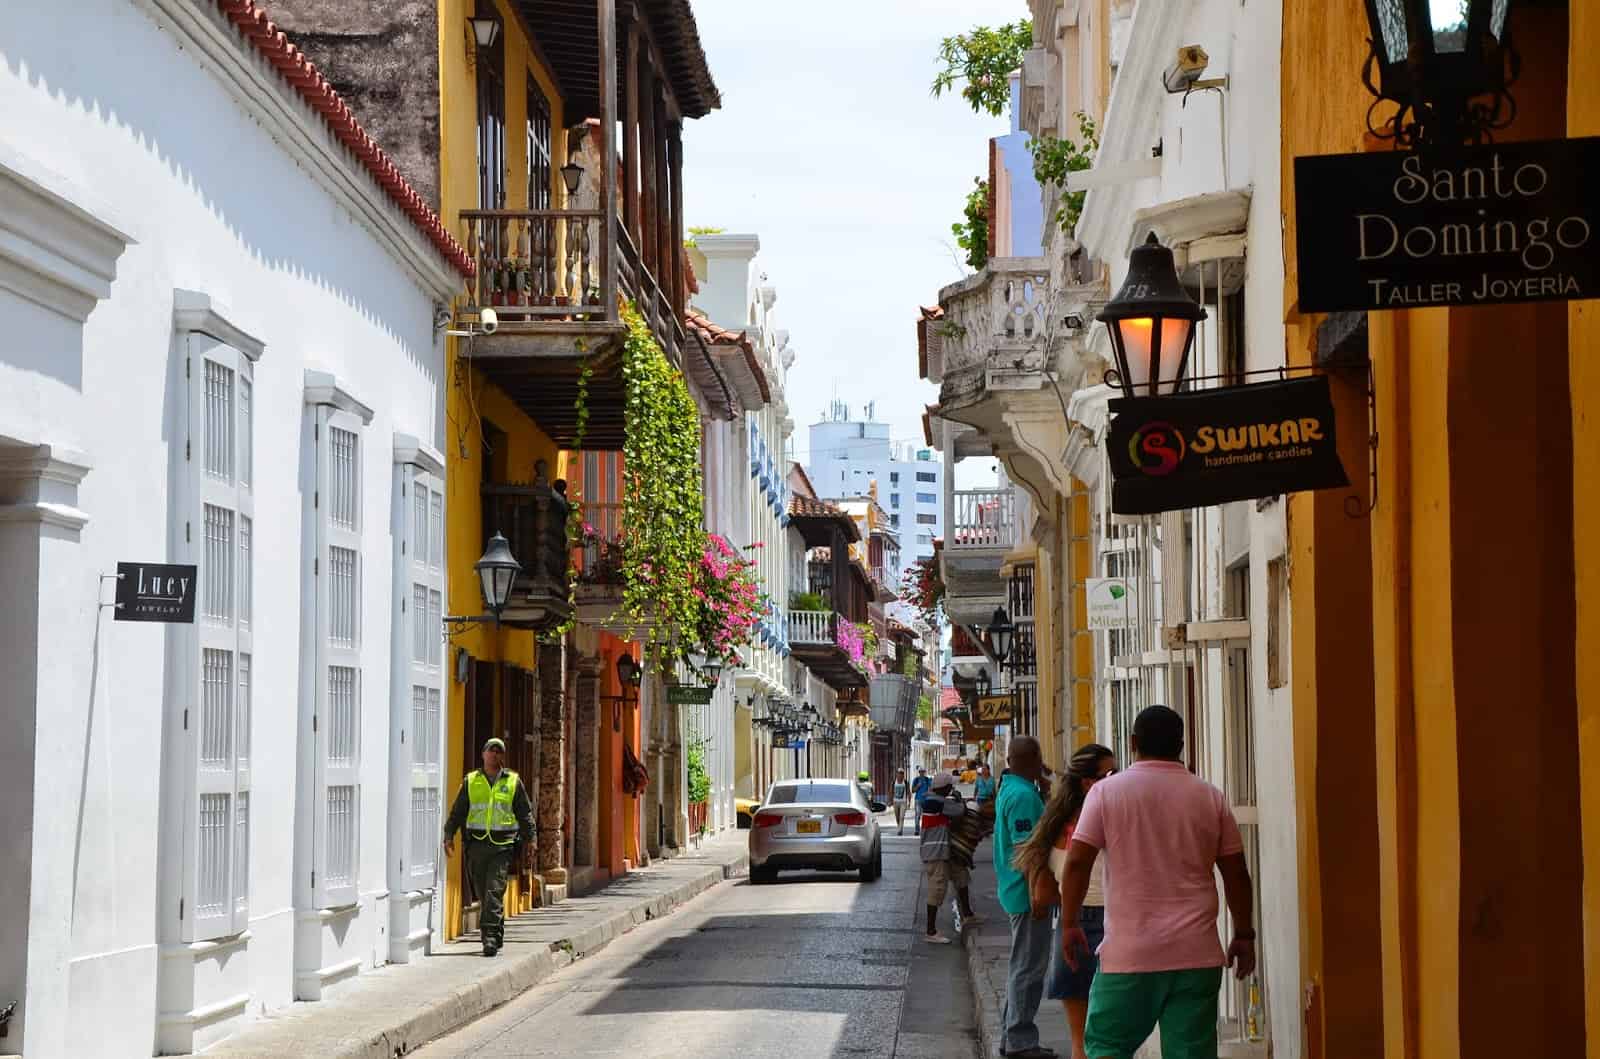 Calle de Santo Domingo in El Centro, Cartagena, Colombia